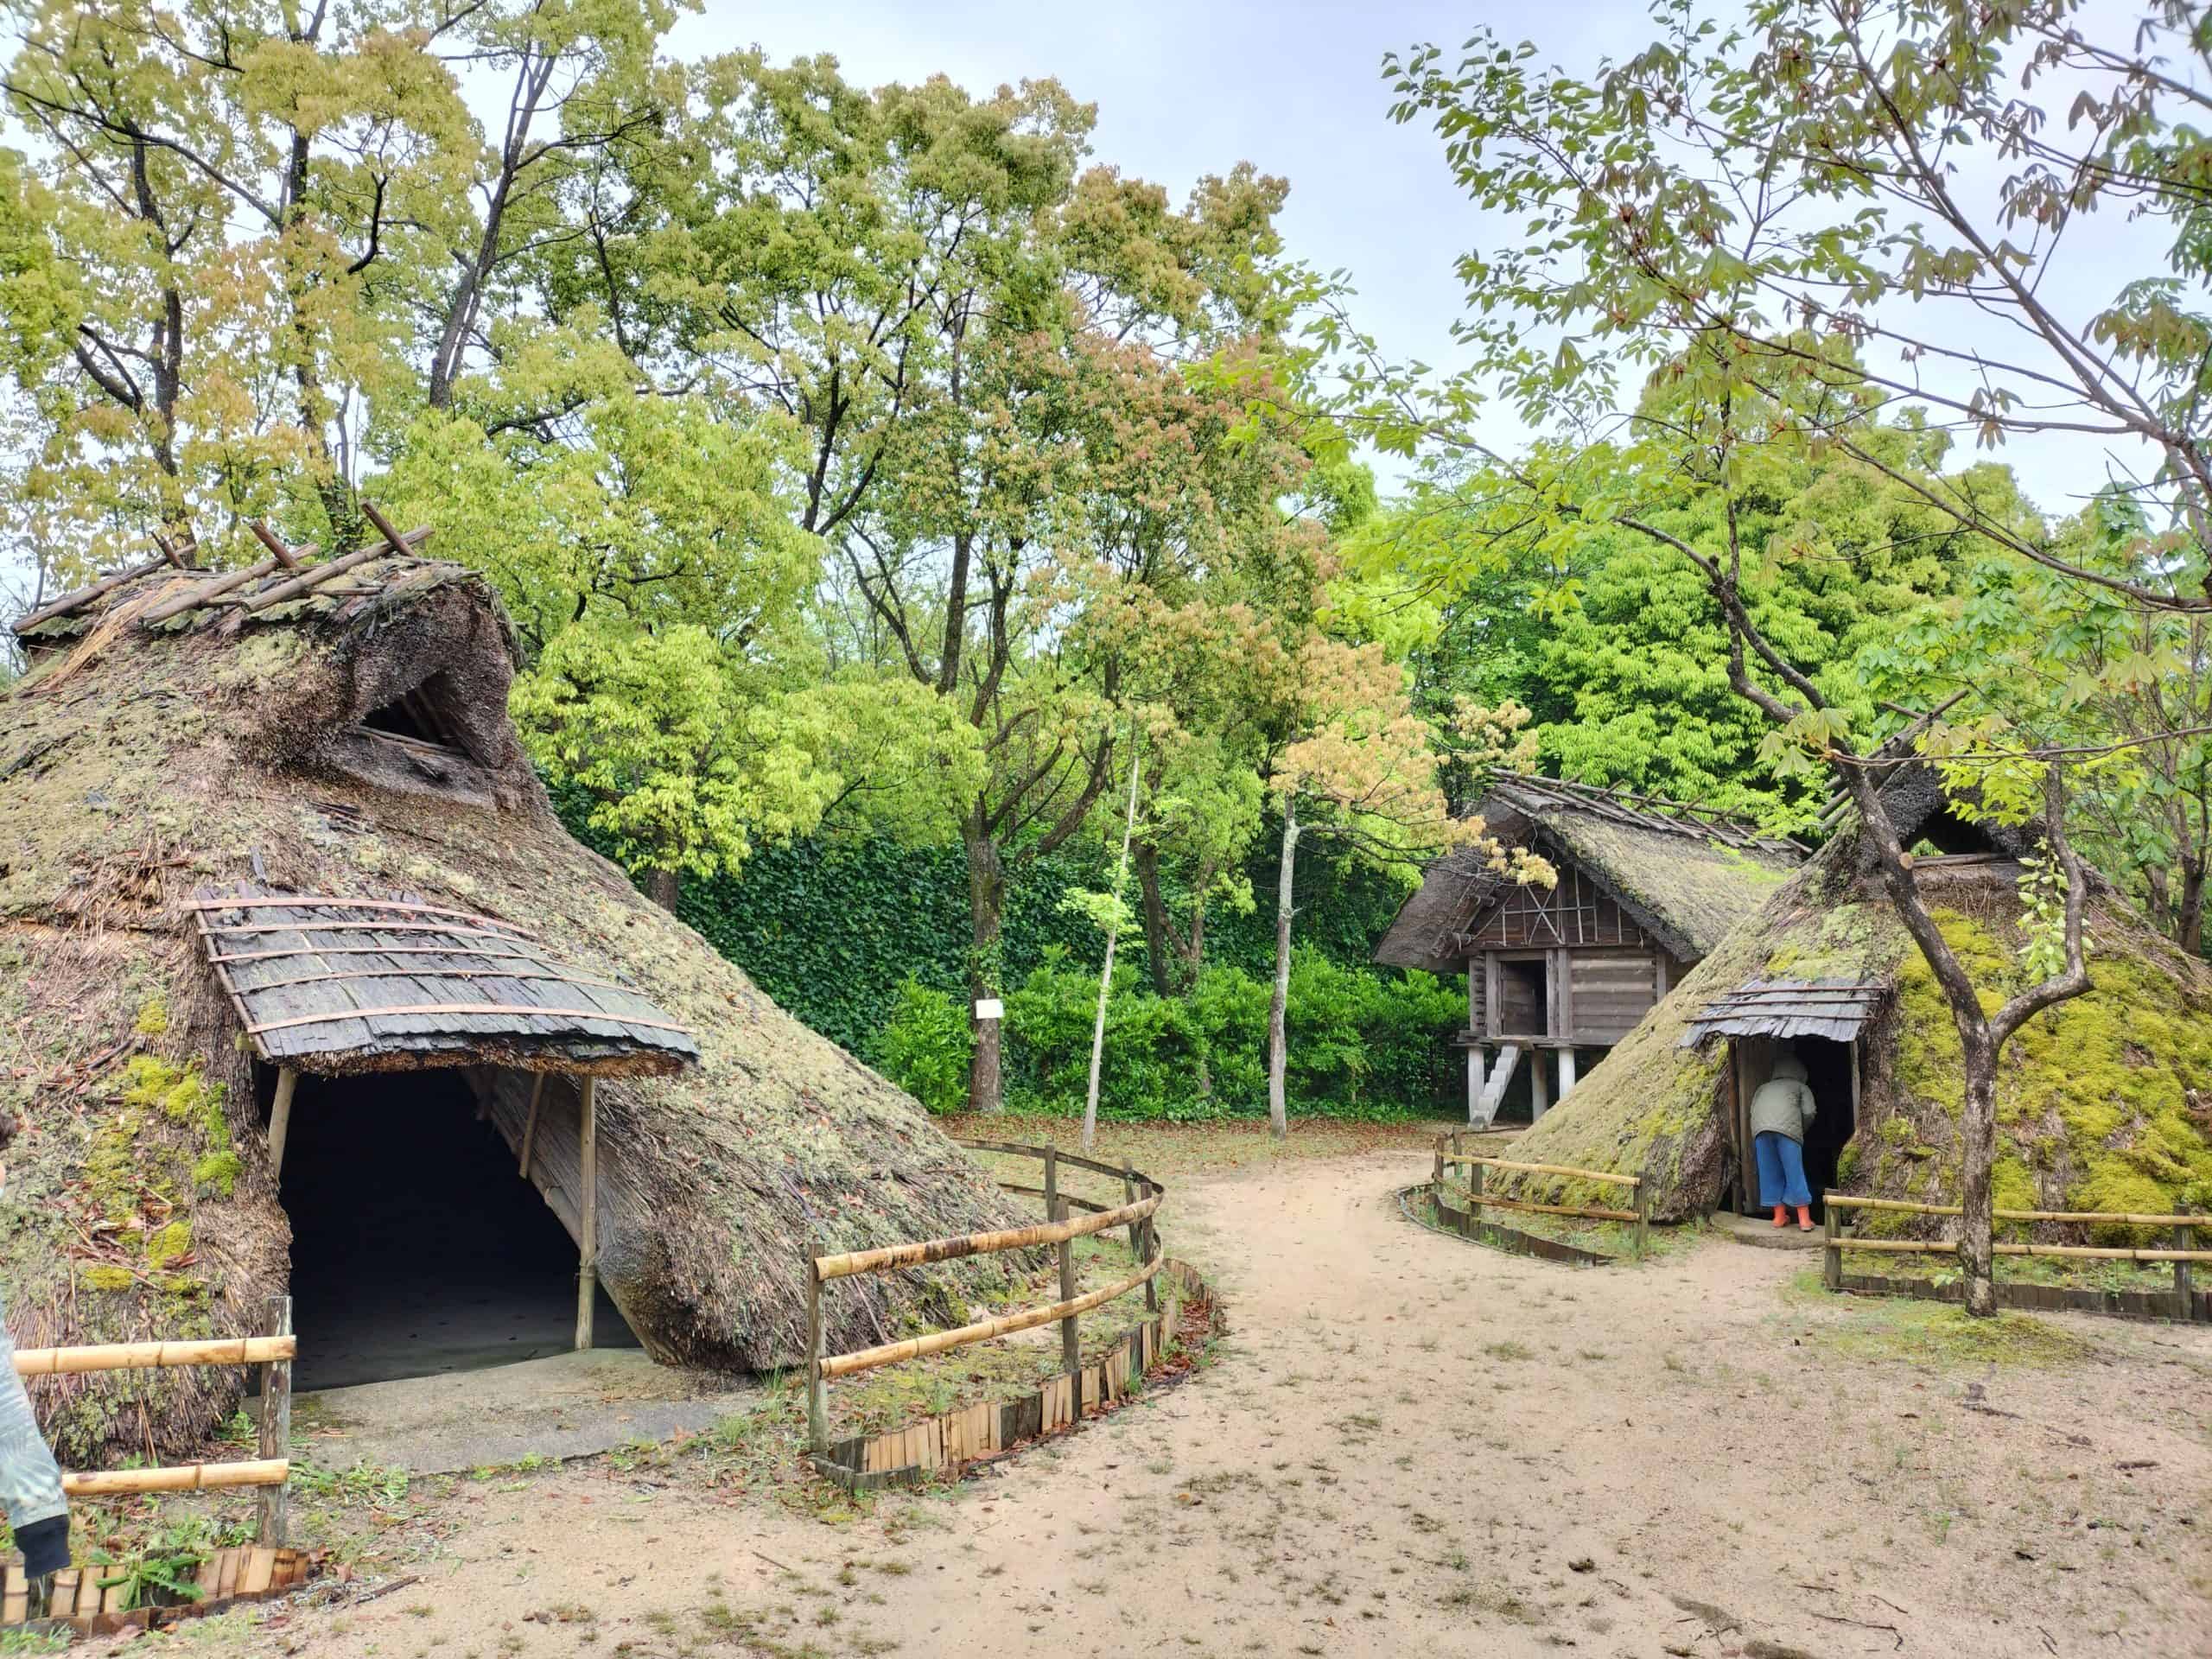 弥生時代の竪穴住居 Tateanajyukyo = Pit dwellings in Yayoi era 